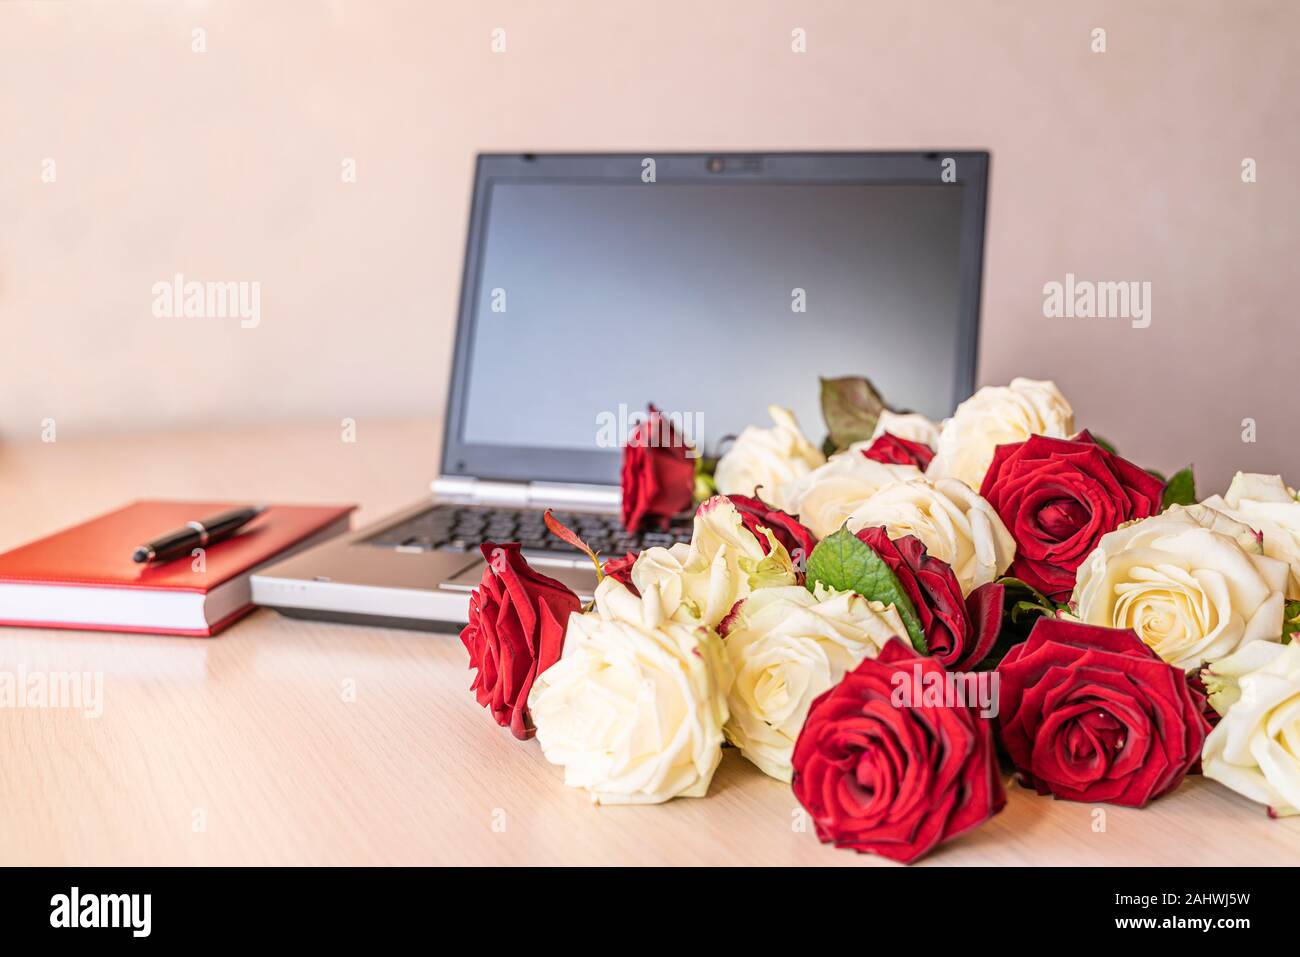 Blumen Geschenk frische weiße und rote Rosen am Arbeitsplatz auf leicht rosa Hintergrund. Auf hölzernen Tisch in der Nähe Laptop Tastatur ist groß Anzahl der Rosen. V Stockfoto